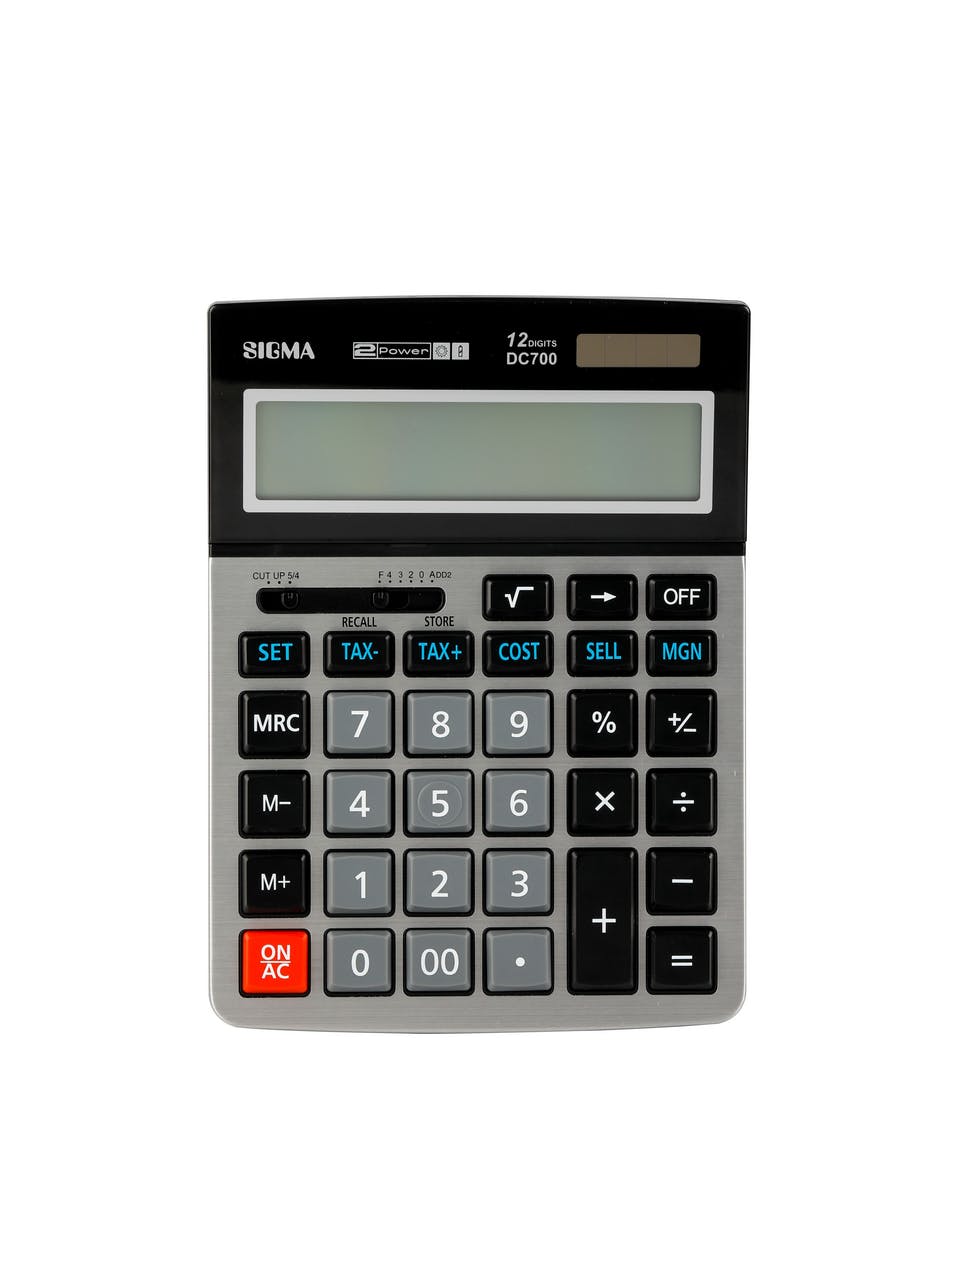 Calculatrice financière CASIO Financière FC 100V-2 Calcu…